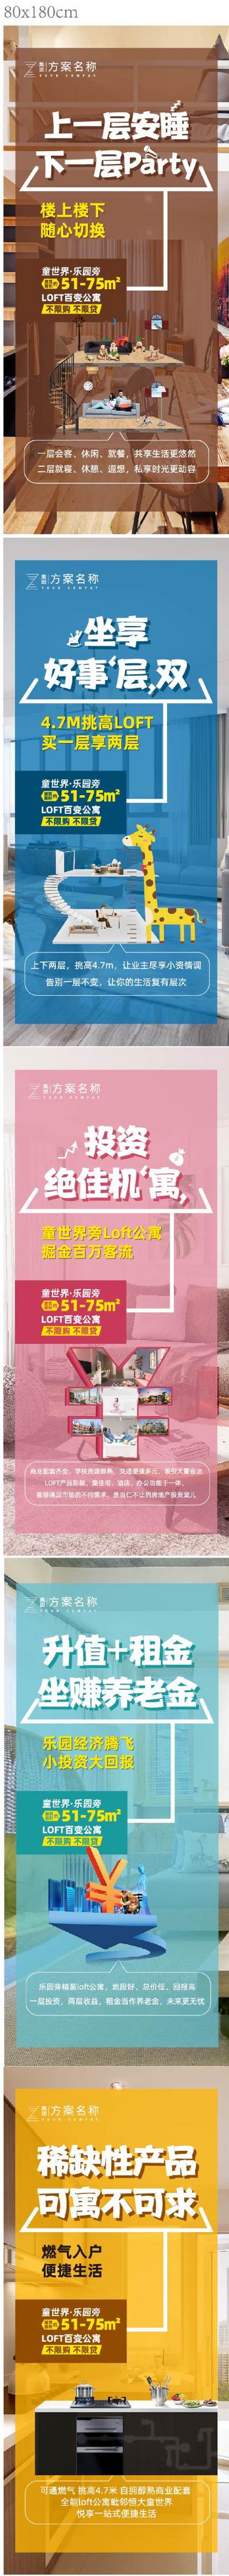 南门网 海报 地产 LOFT 公寓 两层 投资 升值 加推 稀缺